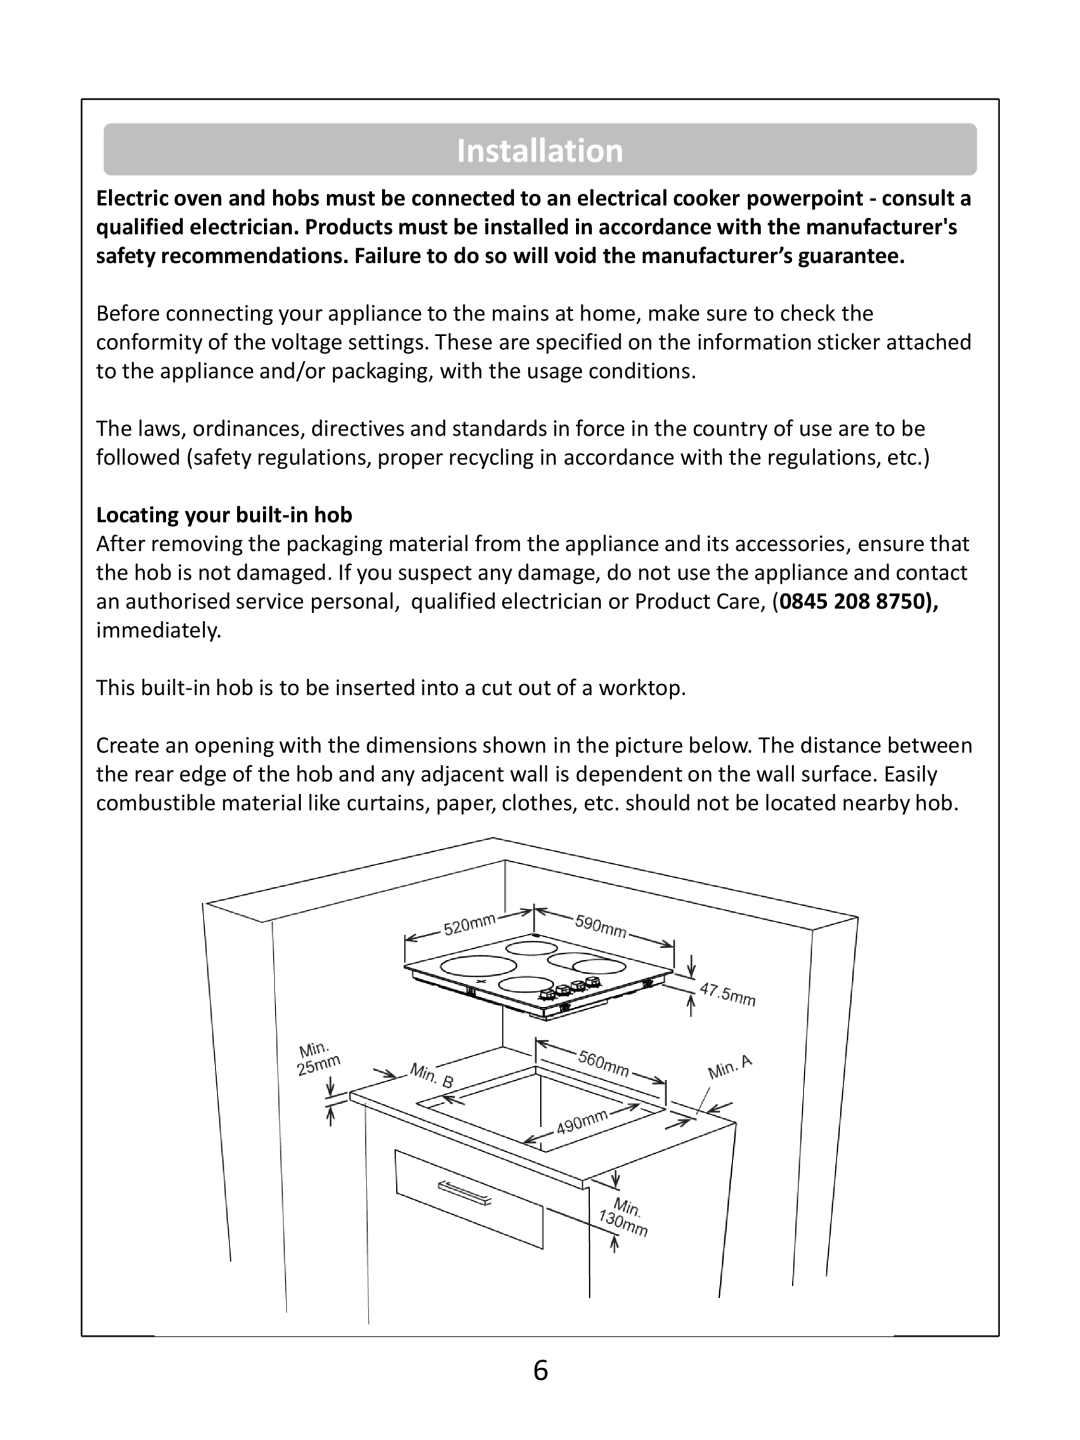 Russell Hobbs RHEH1 instruction manual Installation, Locating your built-inhob 